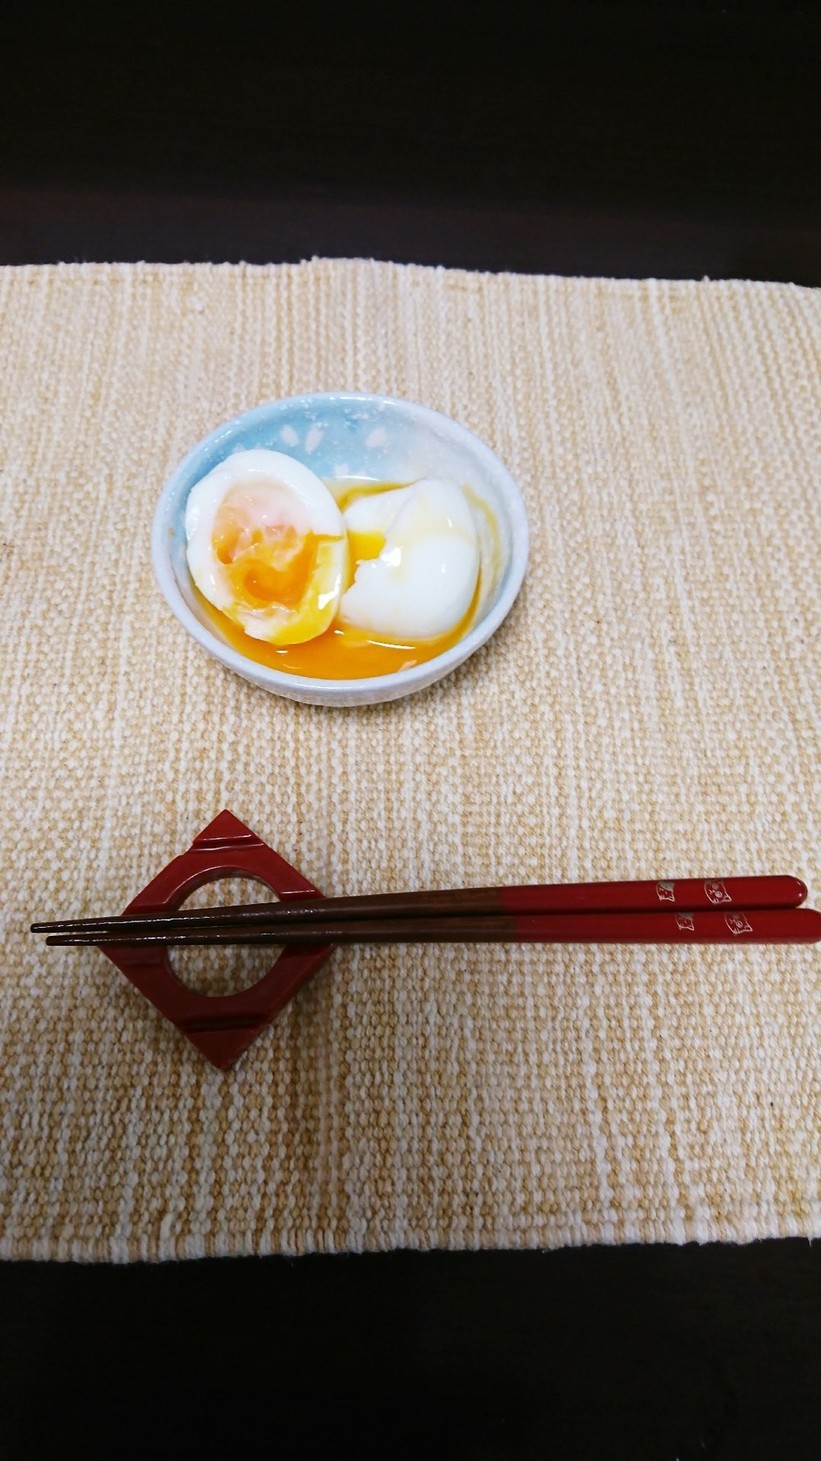 ふんわり半熟卵の画像